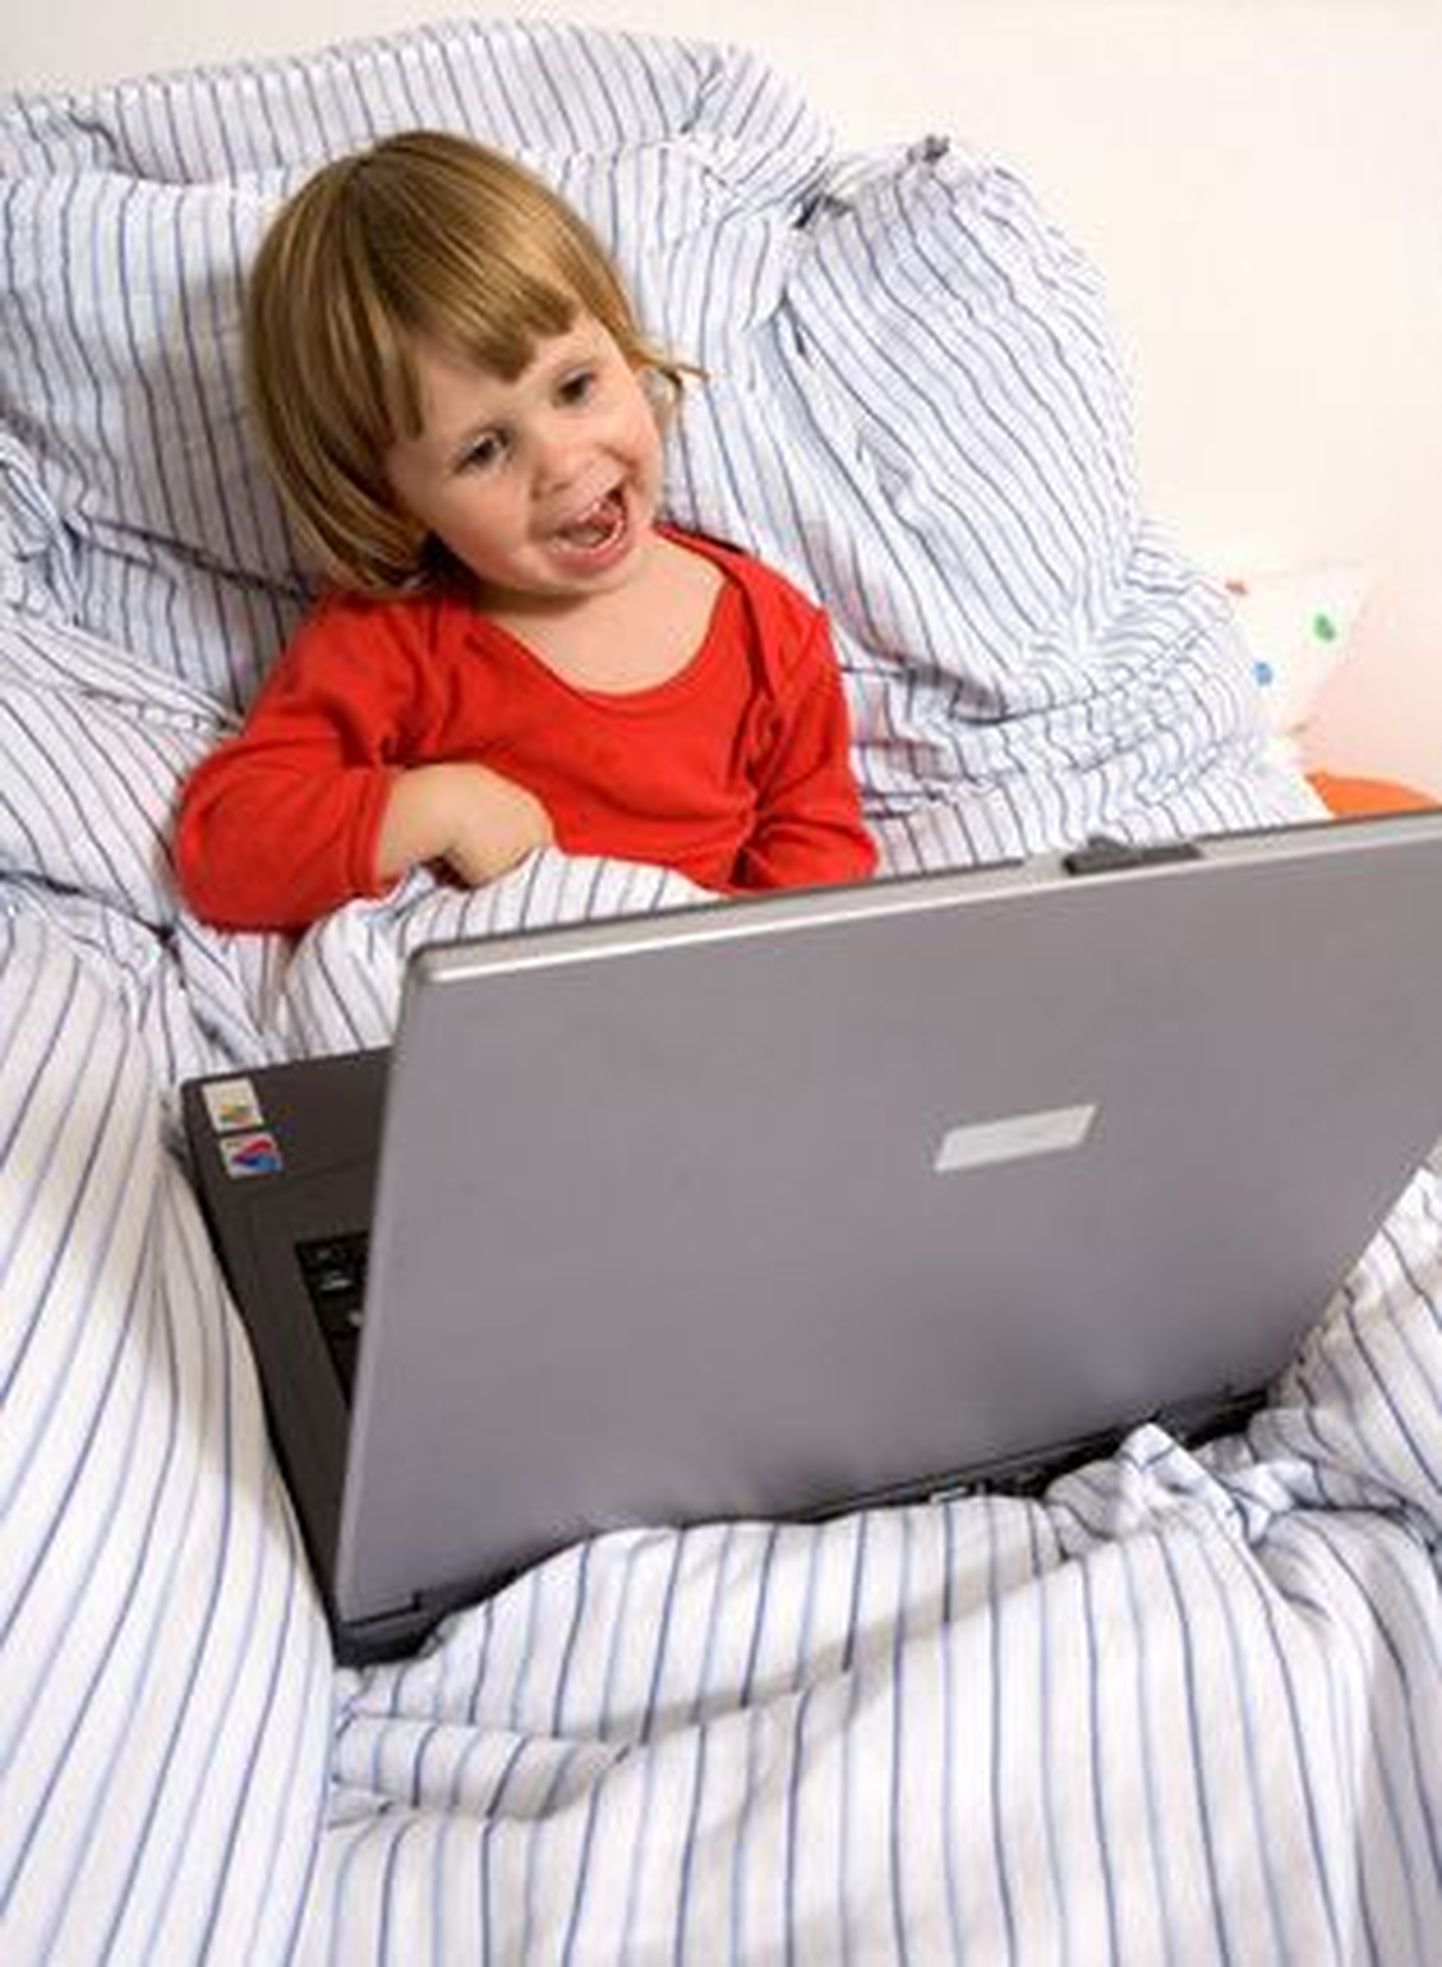 Eesti vanemad ei räägi piisavalt oma lastega internetis valitsevatest ohtudest.